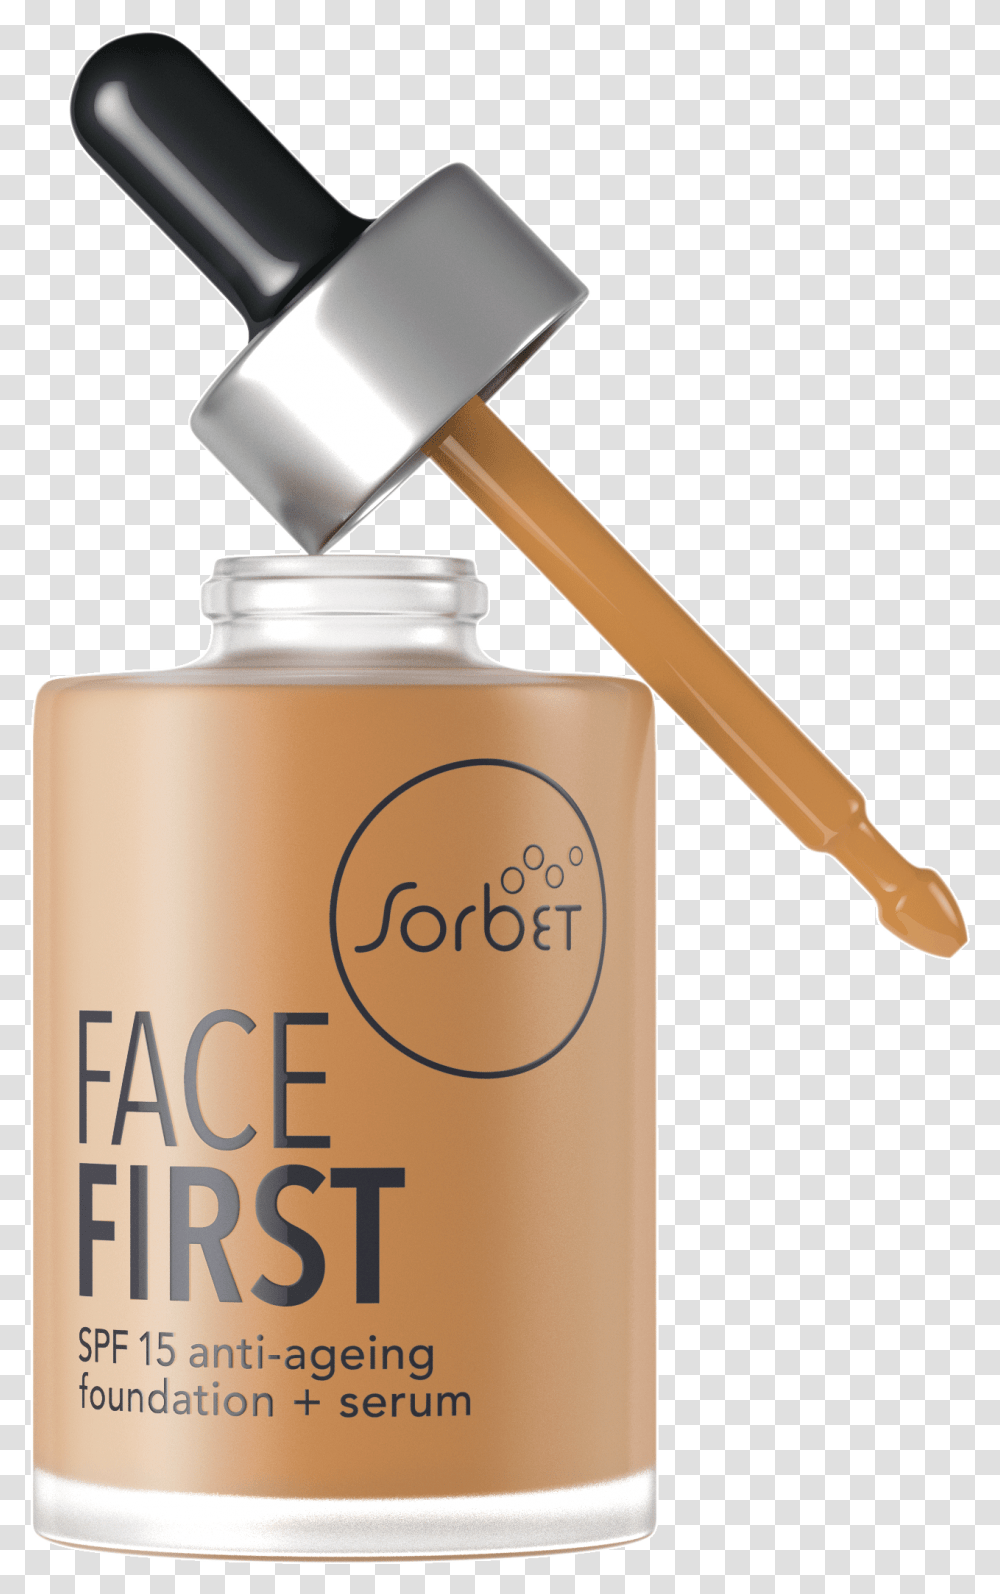 Sorbet Cosmetics Face First Cool Caramel Cosmetics, Hammer, Tool, Tin, Can Transparent Png